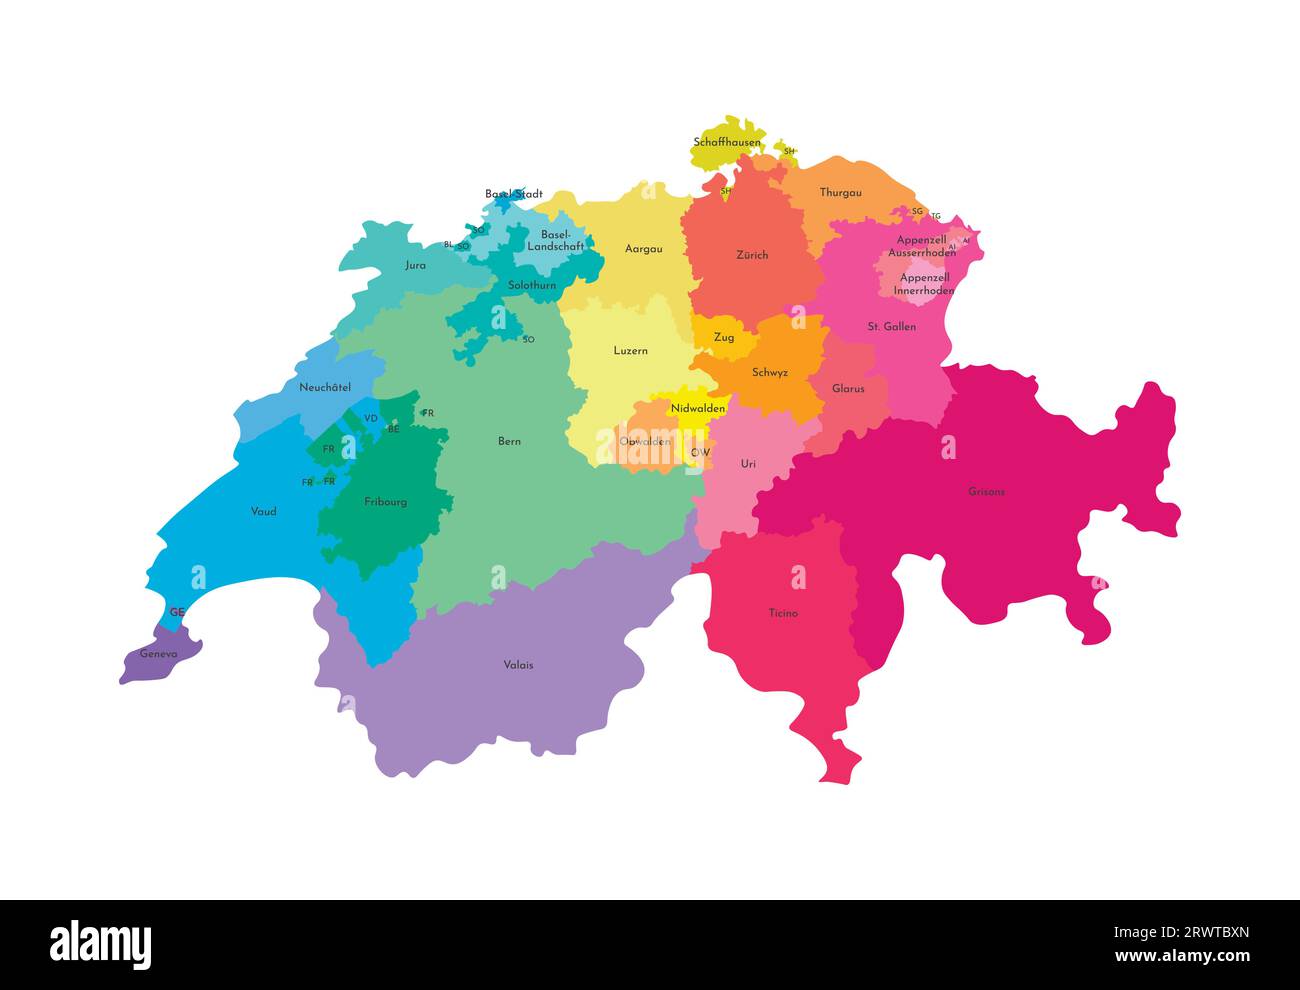 Illustrazione vettoriale isolata della mappa amministrativa semplificata della Svizzera. Confini e nomi delle regioni. Silhouette multicolore. Illustrazione Vettoriale